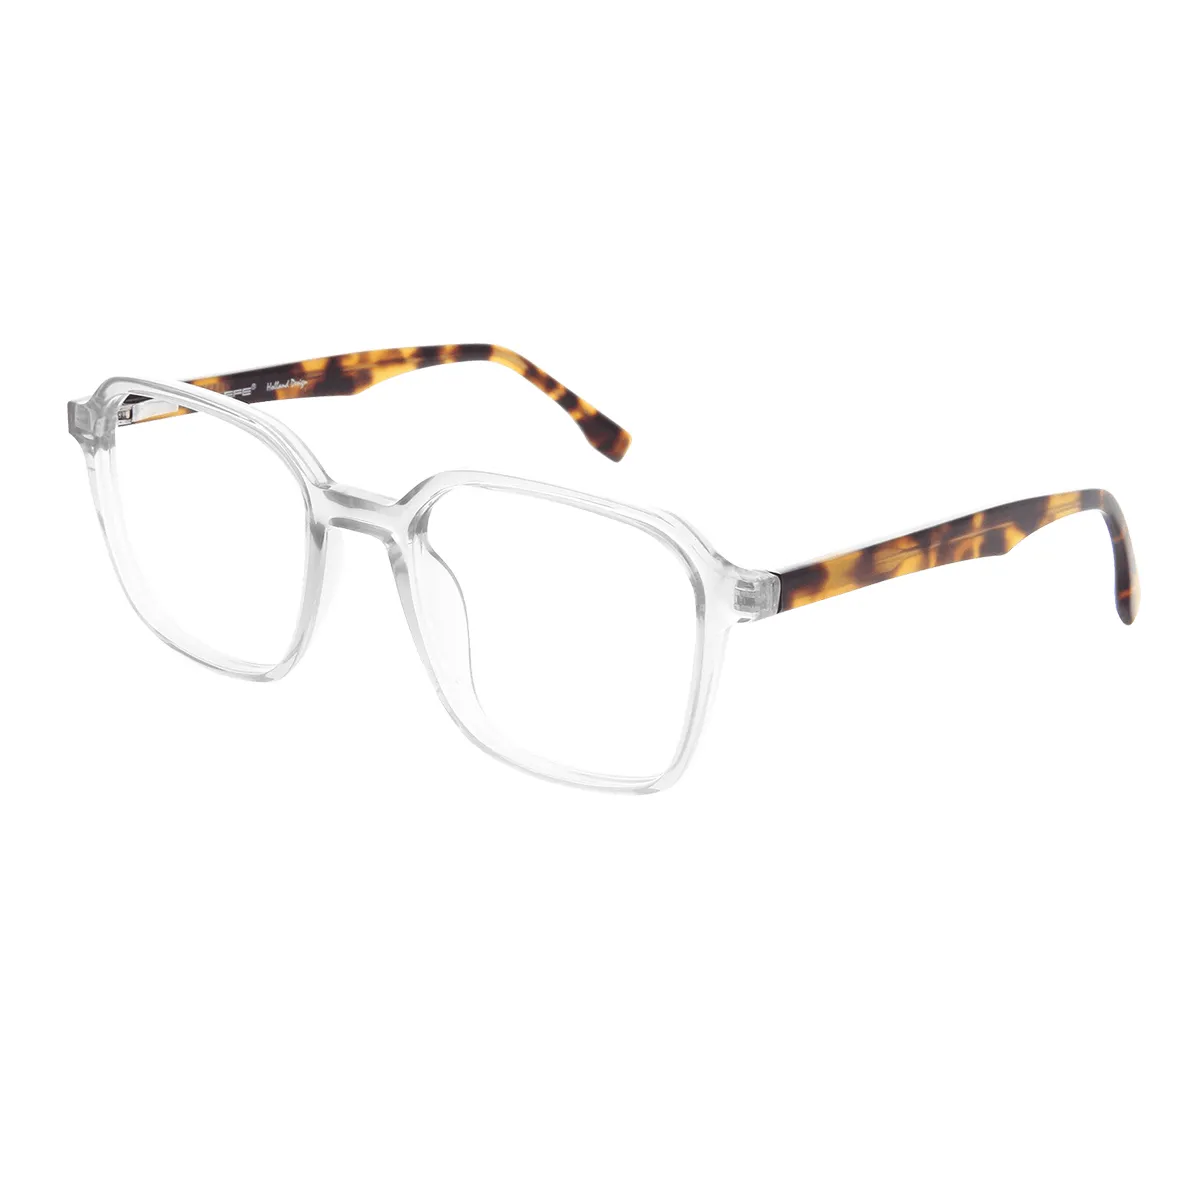 Guthrie - Square Translucent Glasses for Men & Women